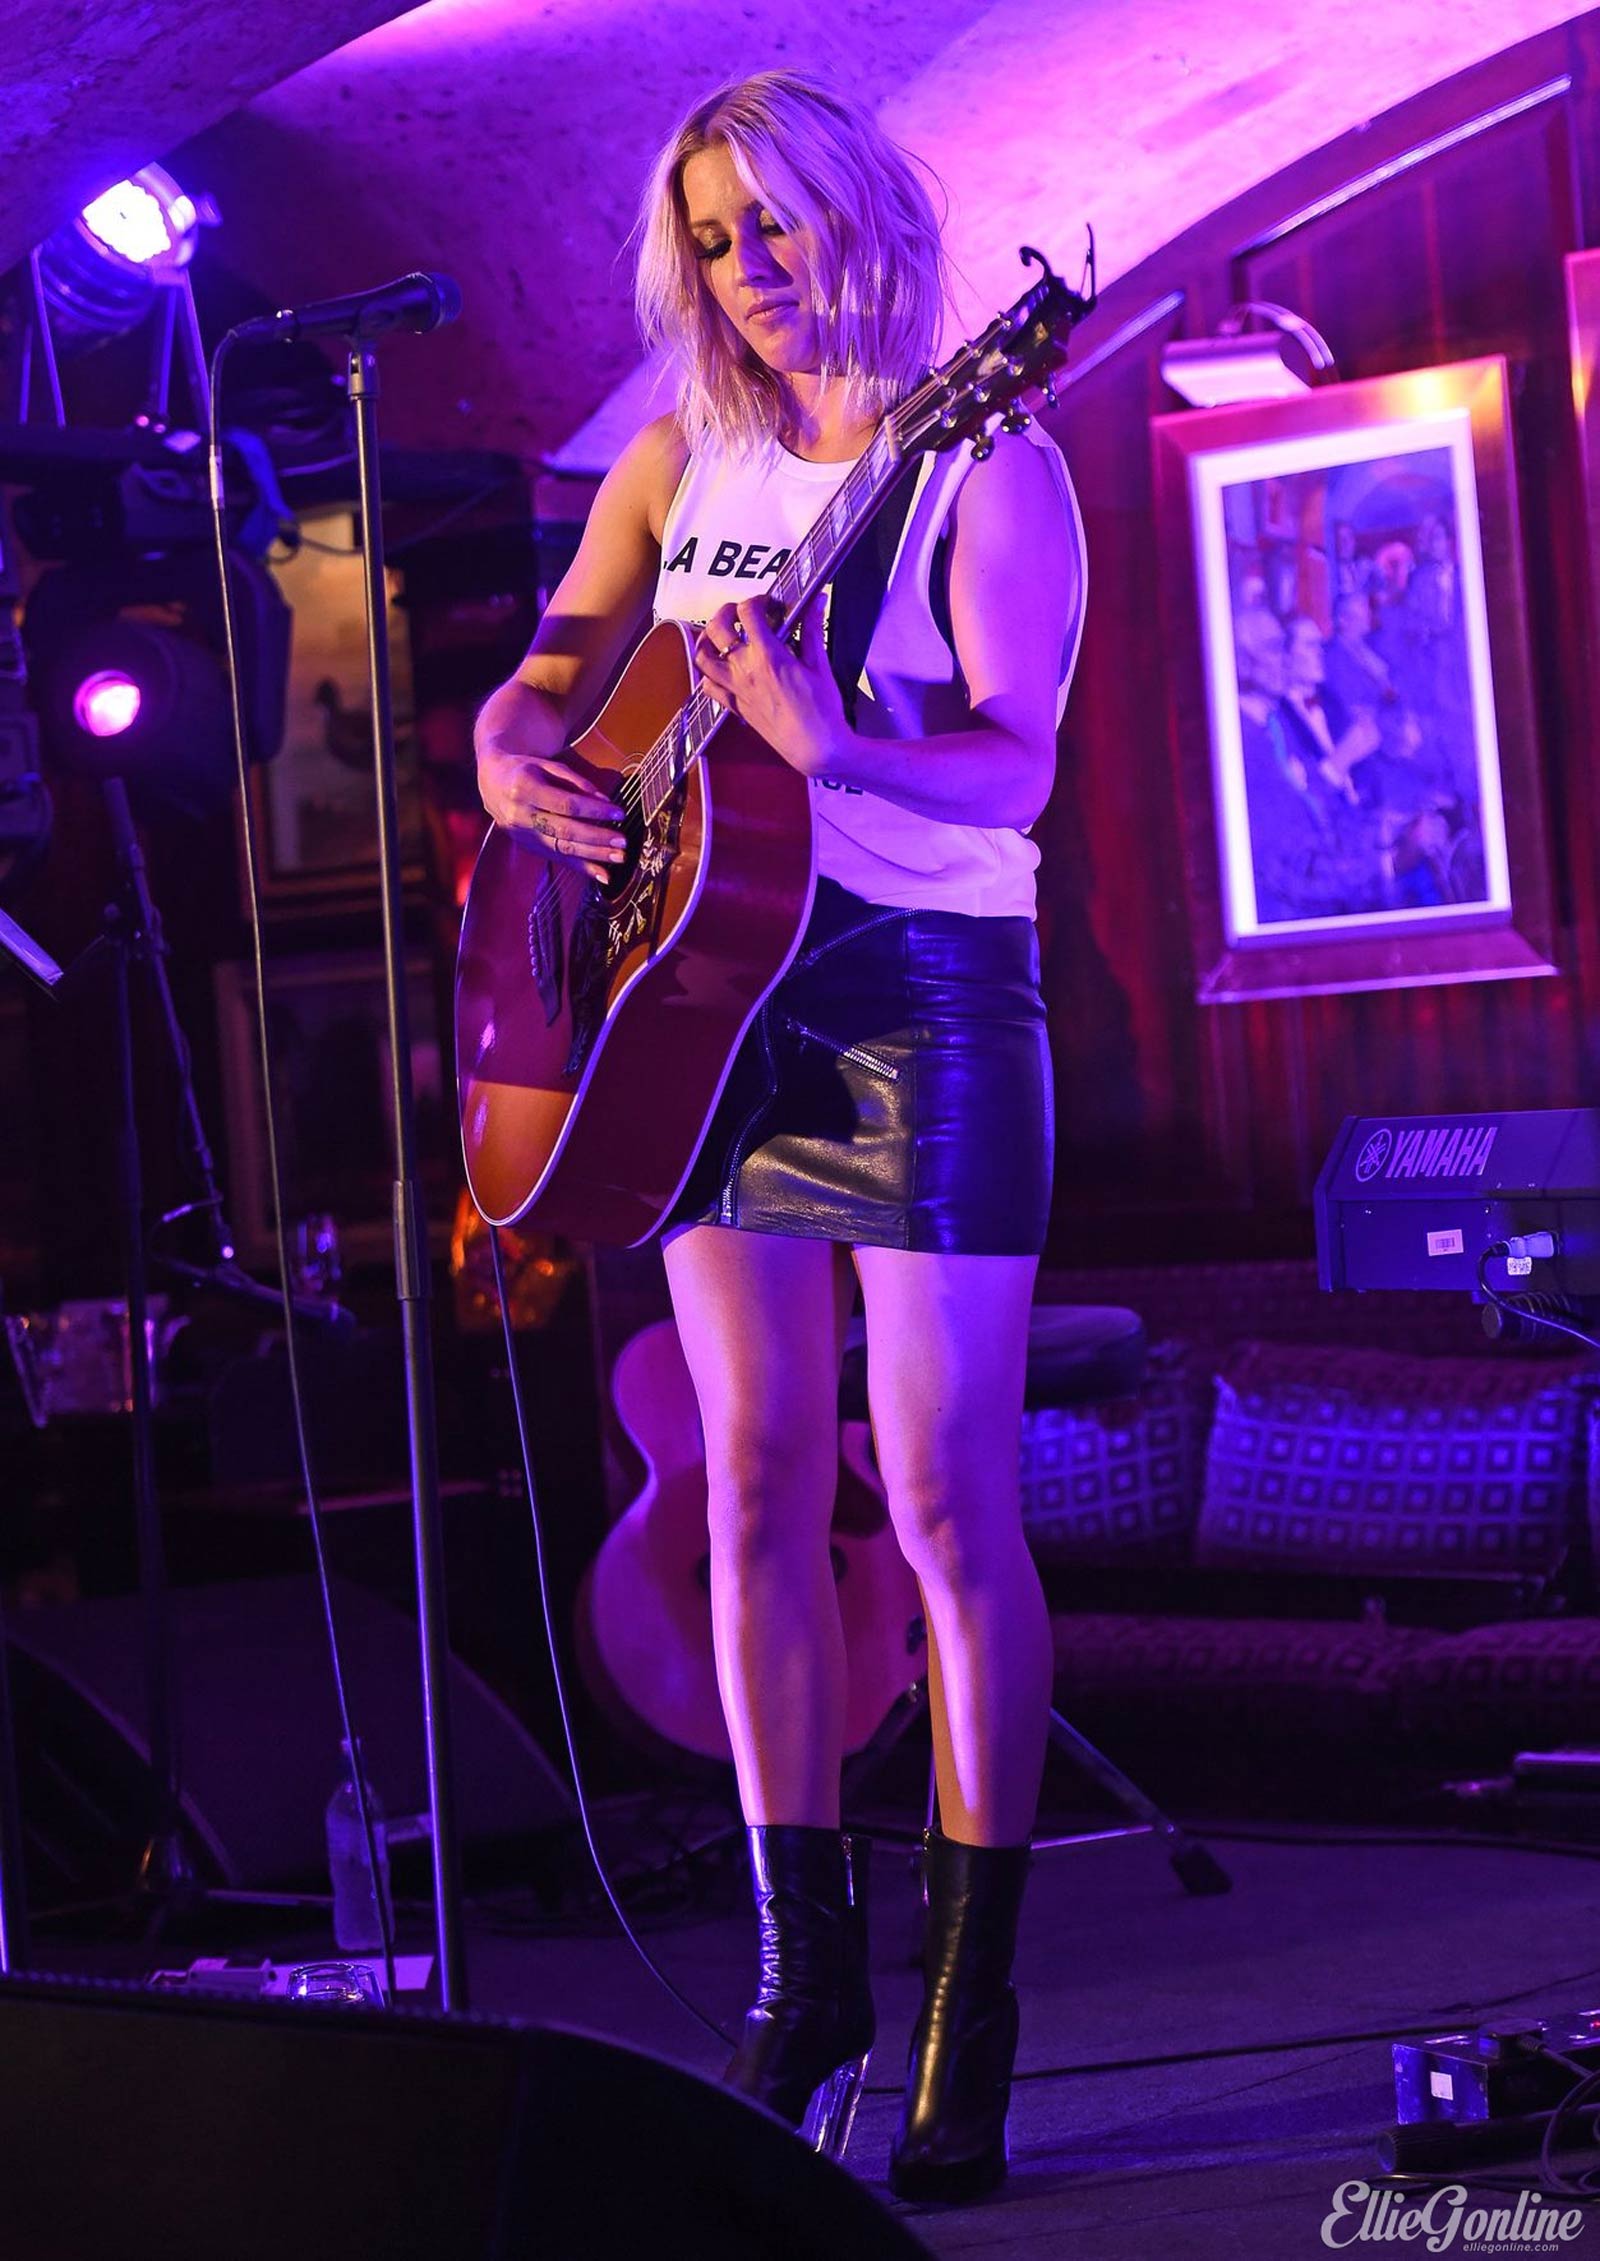 Ellie Goulding performs at Annabels Members Club